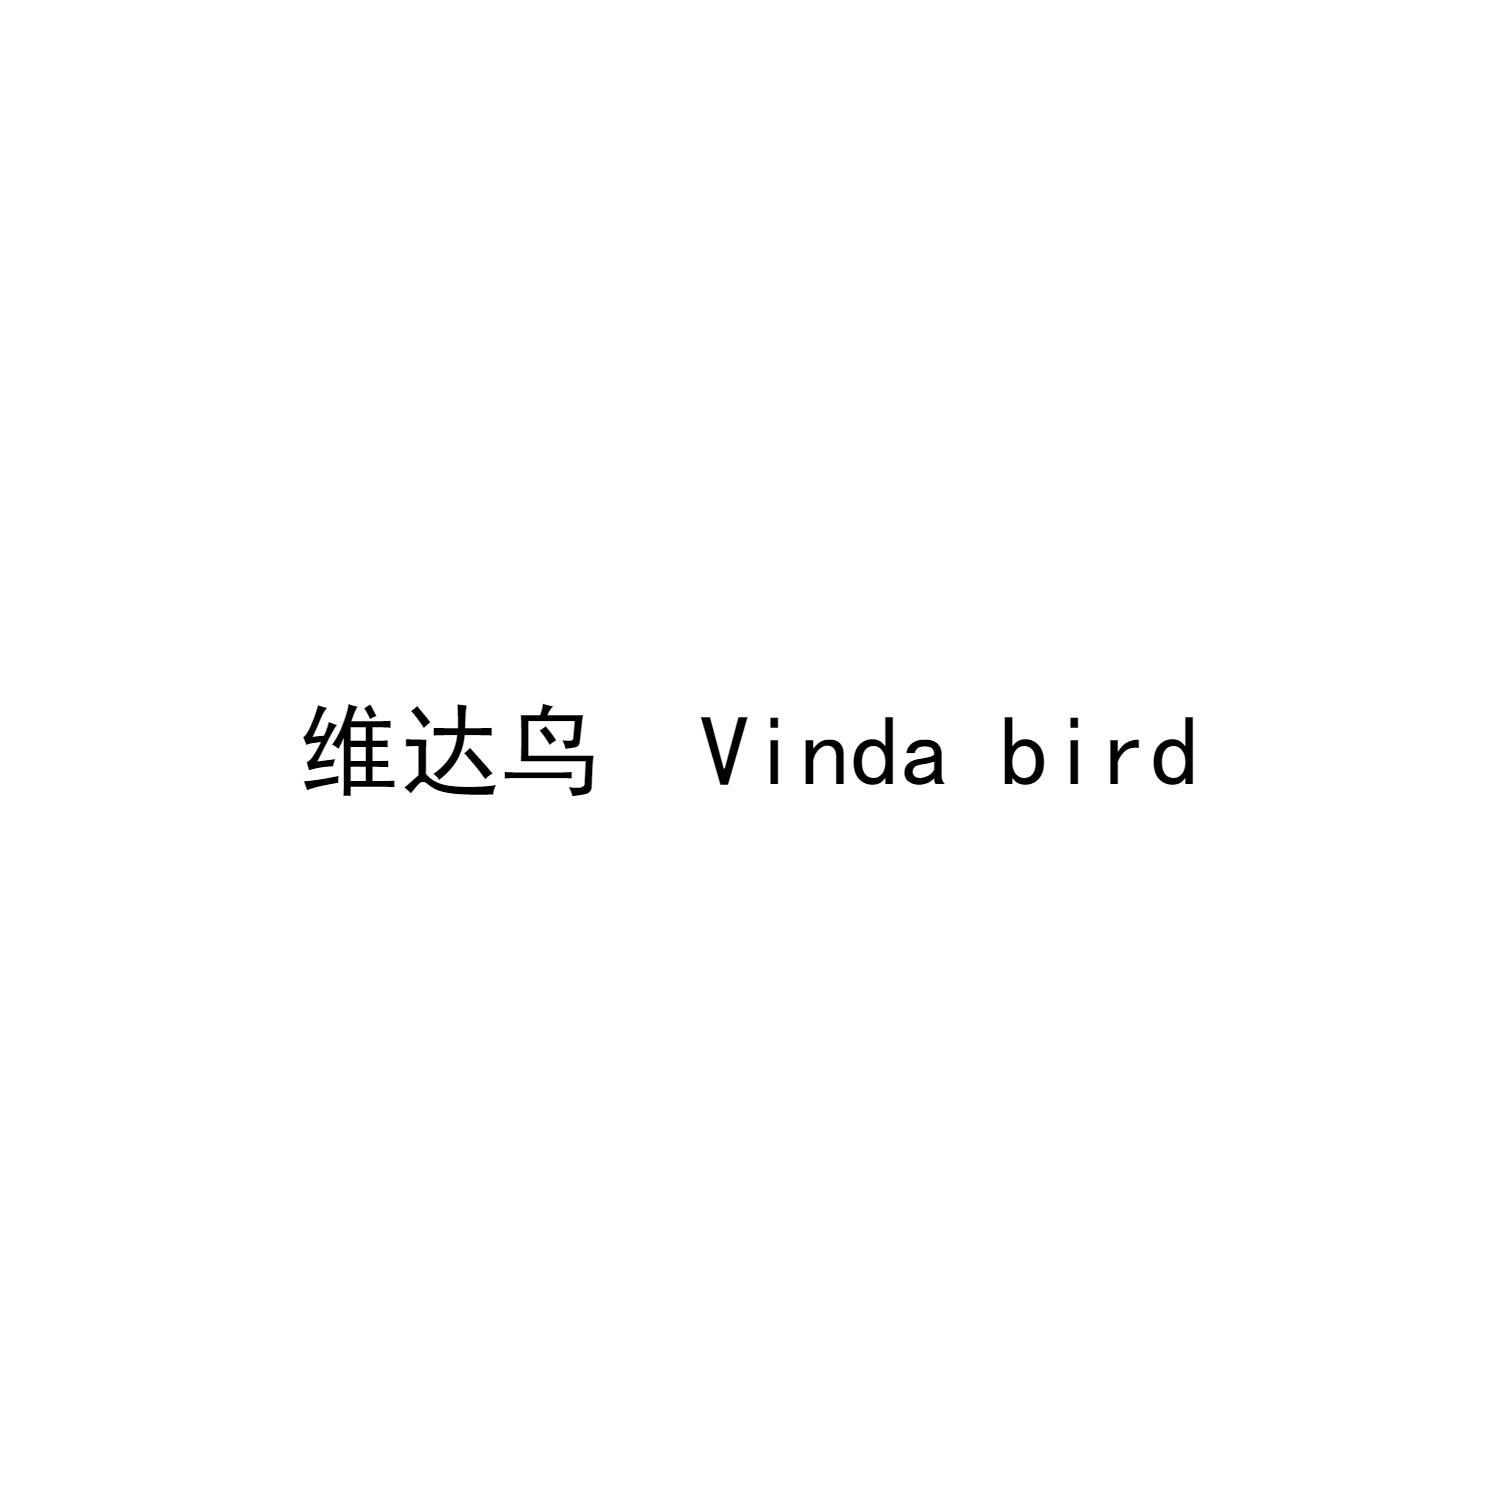 维达鸟 VINDA BIRD